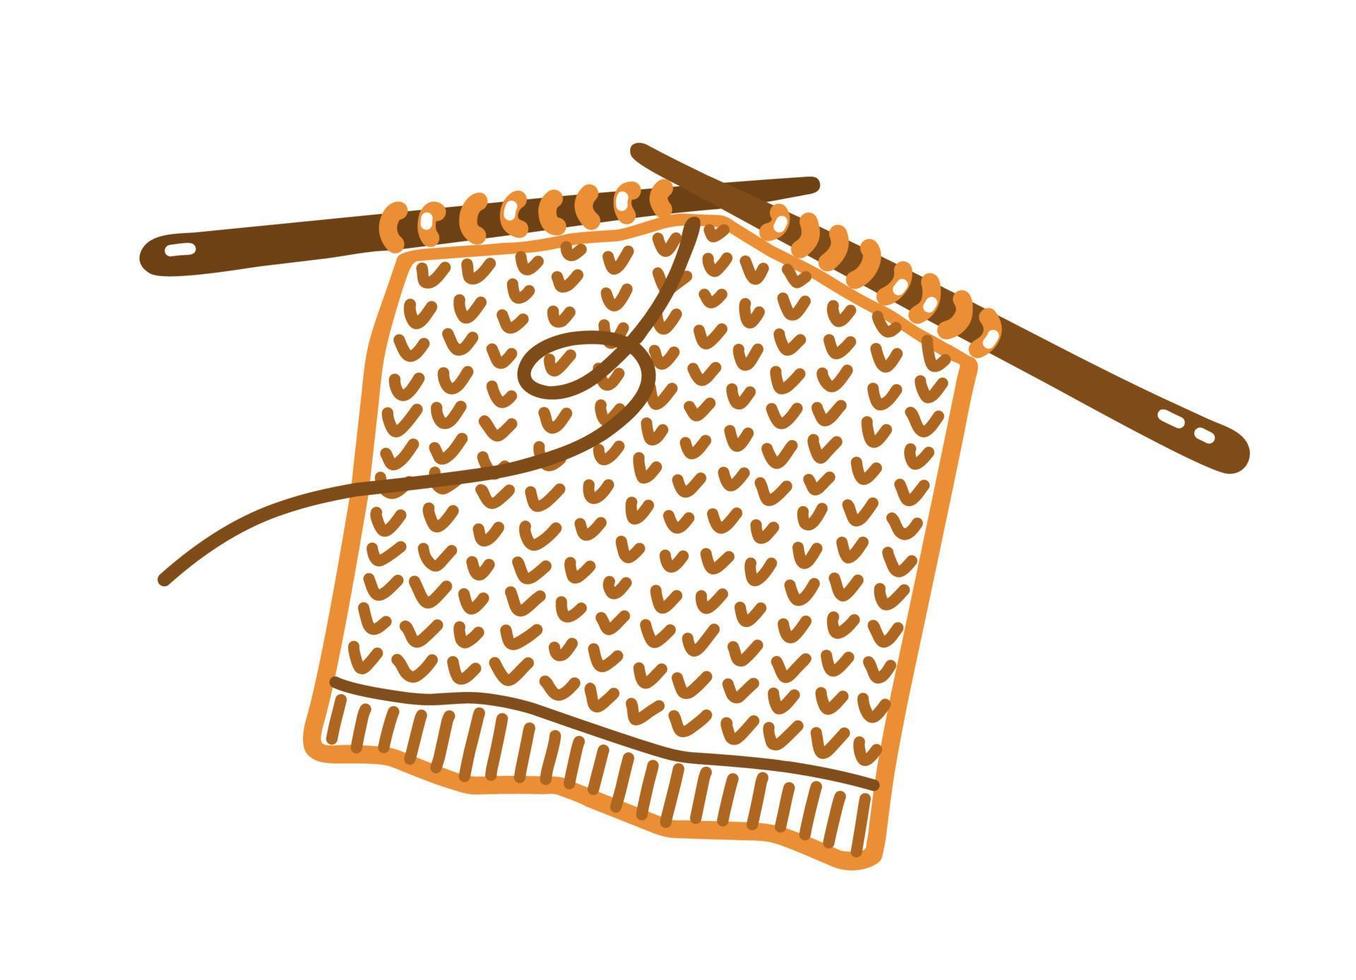 agujas de tejer con tejido de lana en estilo doodle vector